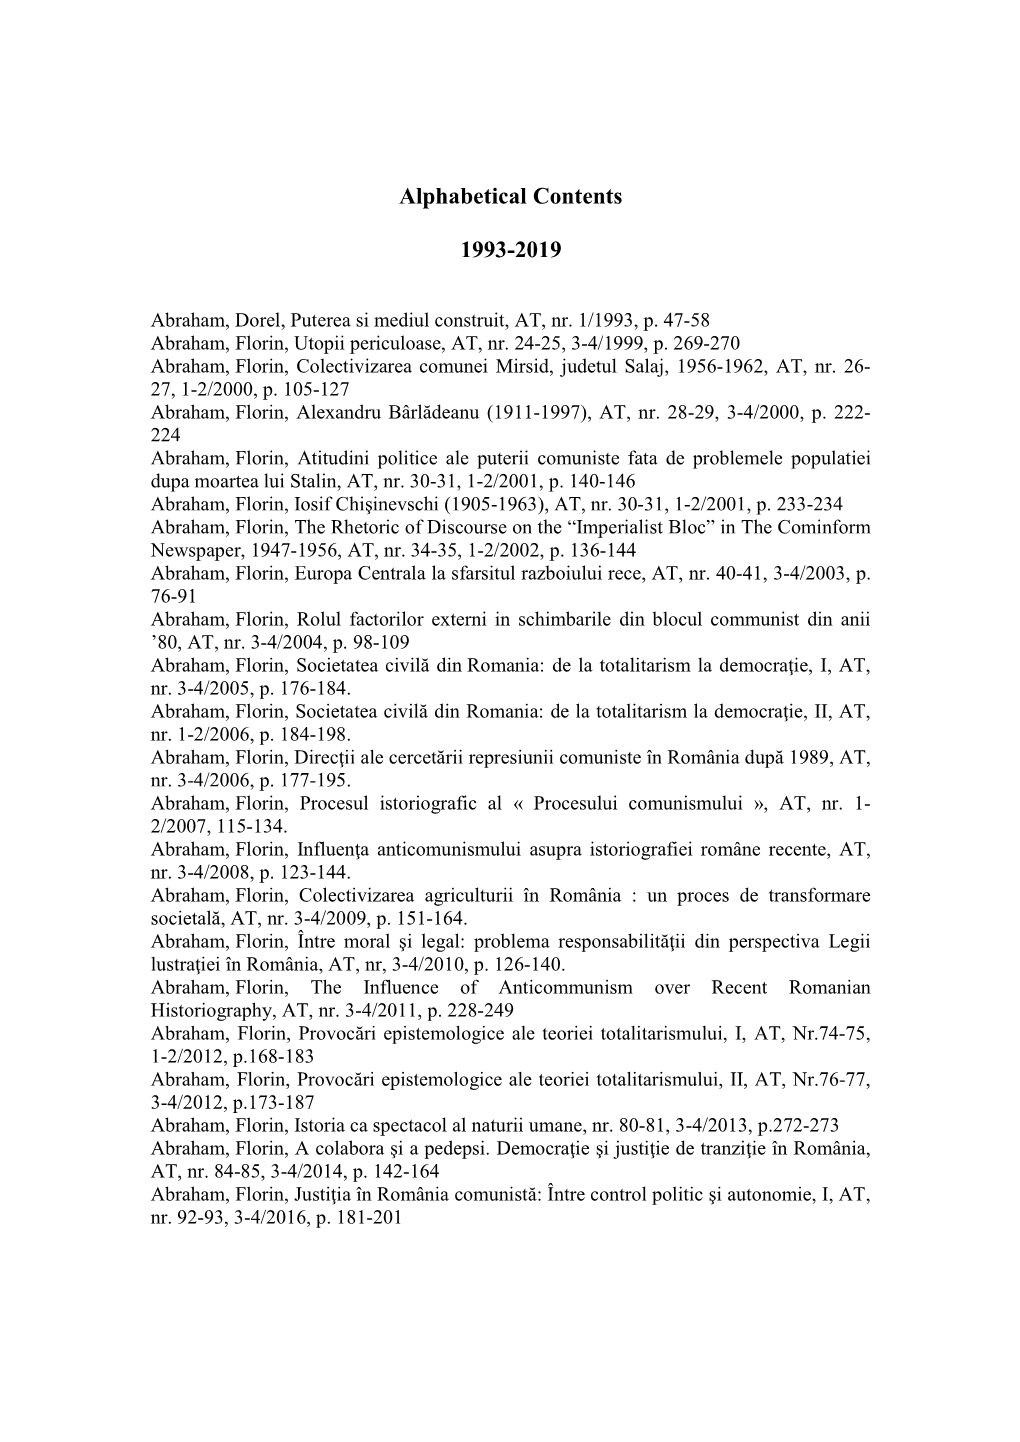 Alphabetical Contents 1993-2019